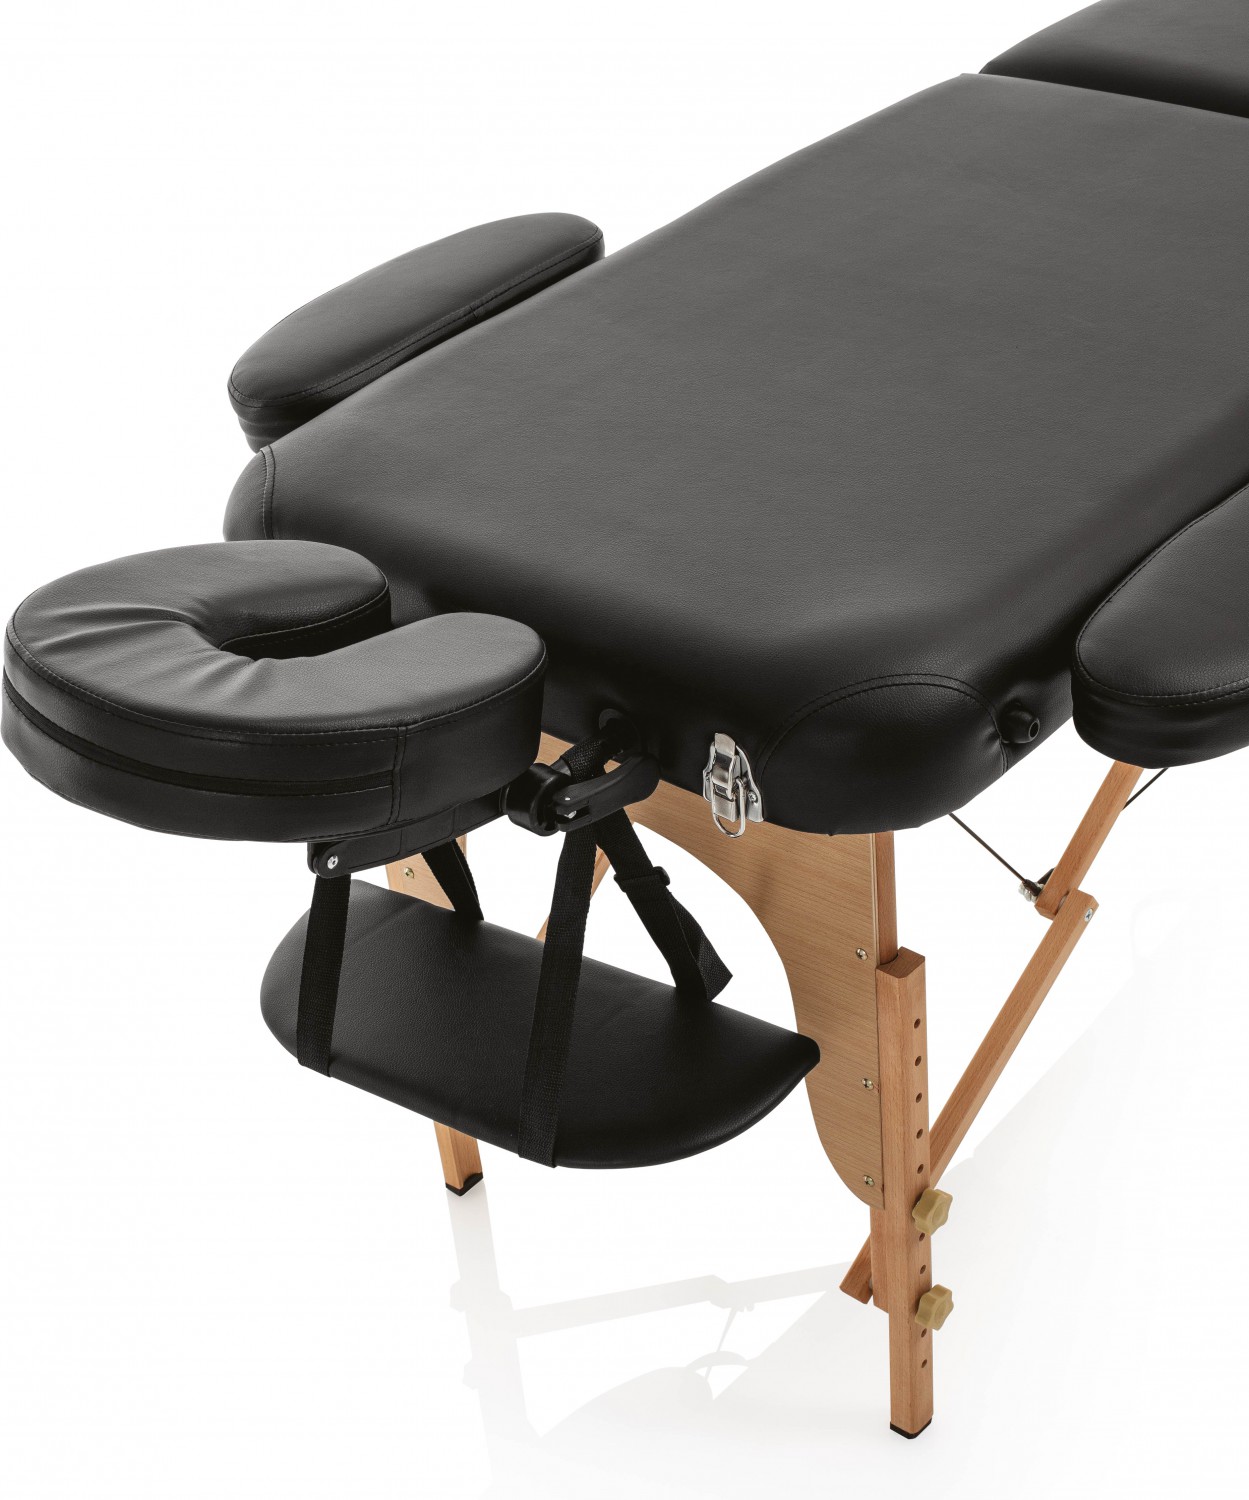  XanitaliaPro Master Confort Wood Tragbare Massageliege schwarz 